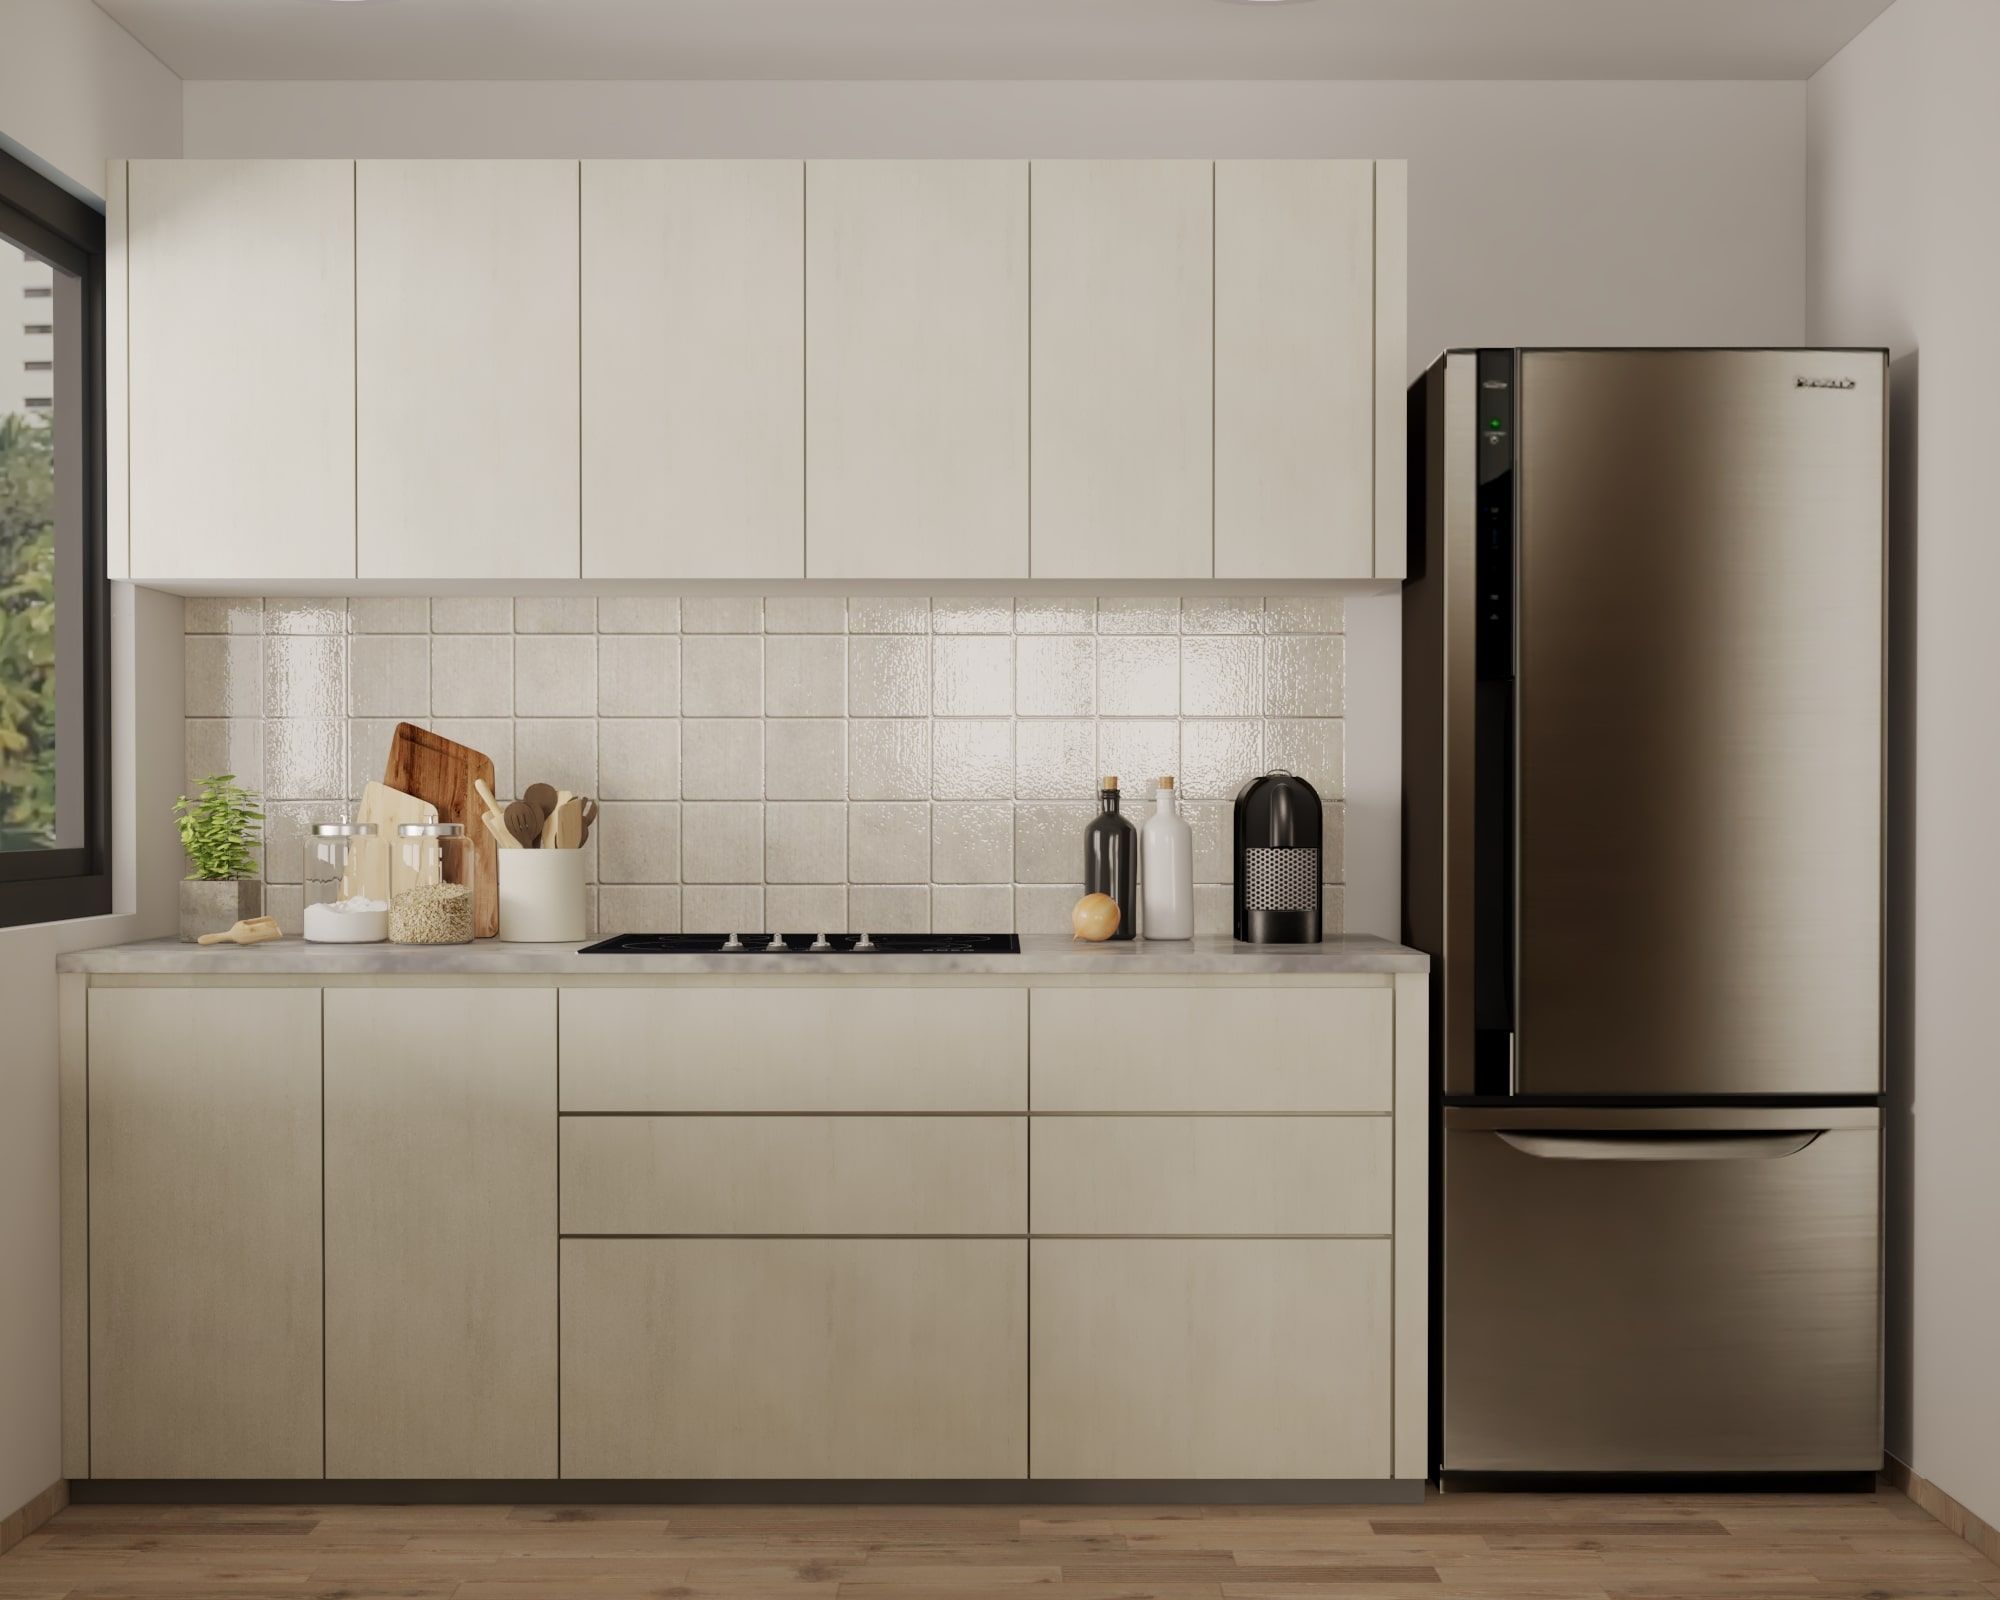 Modern Style Convenient Modular Kitchen Cabinet Design